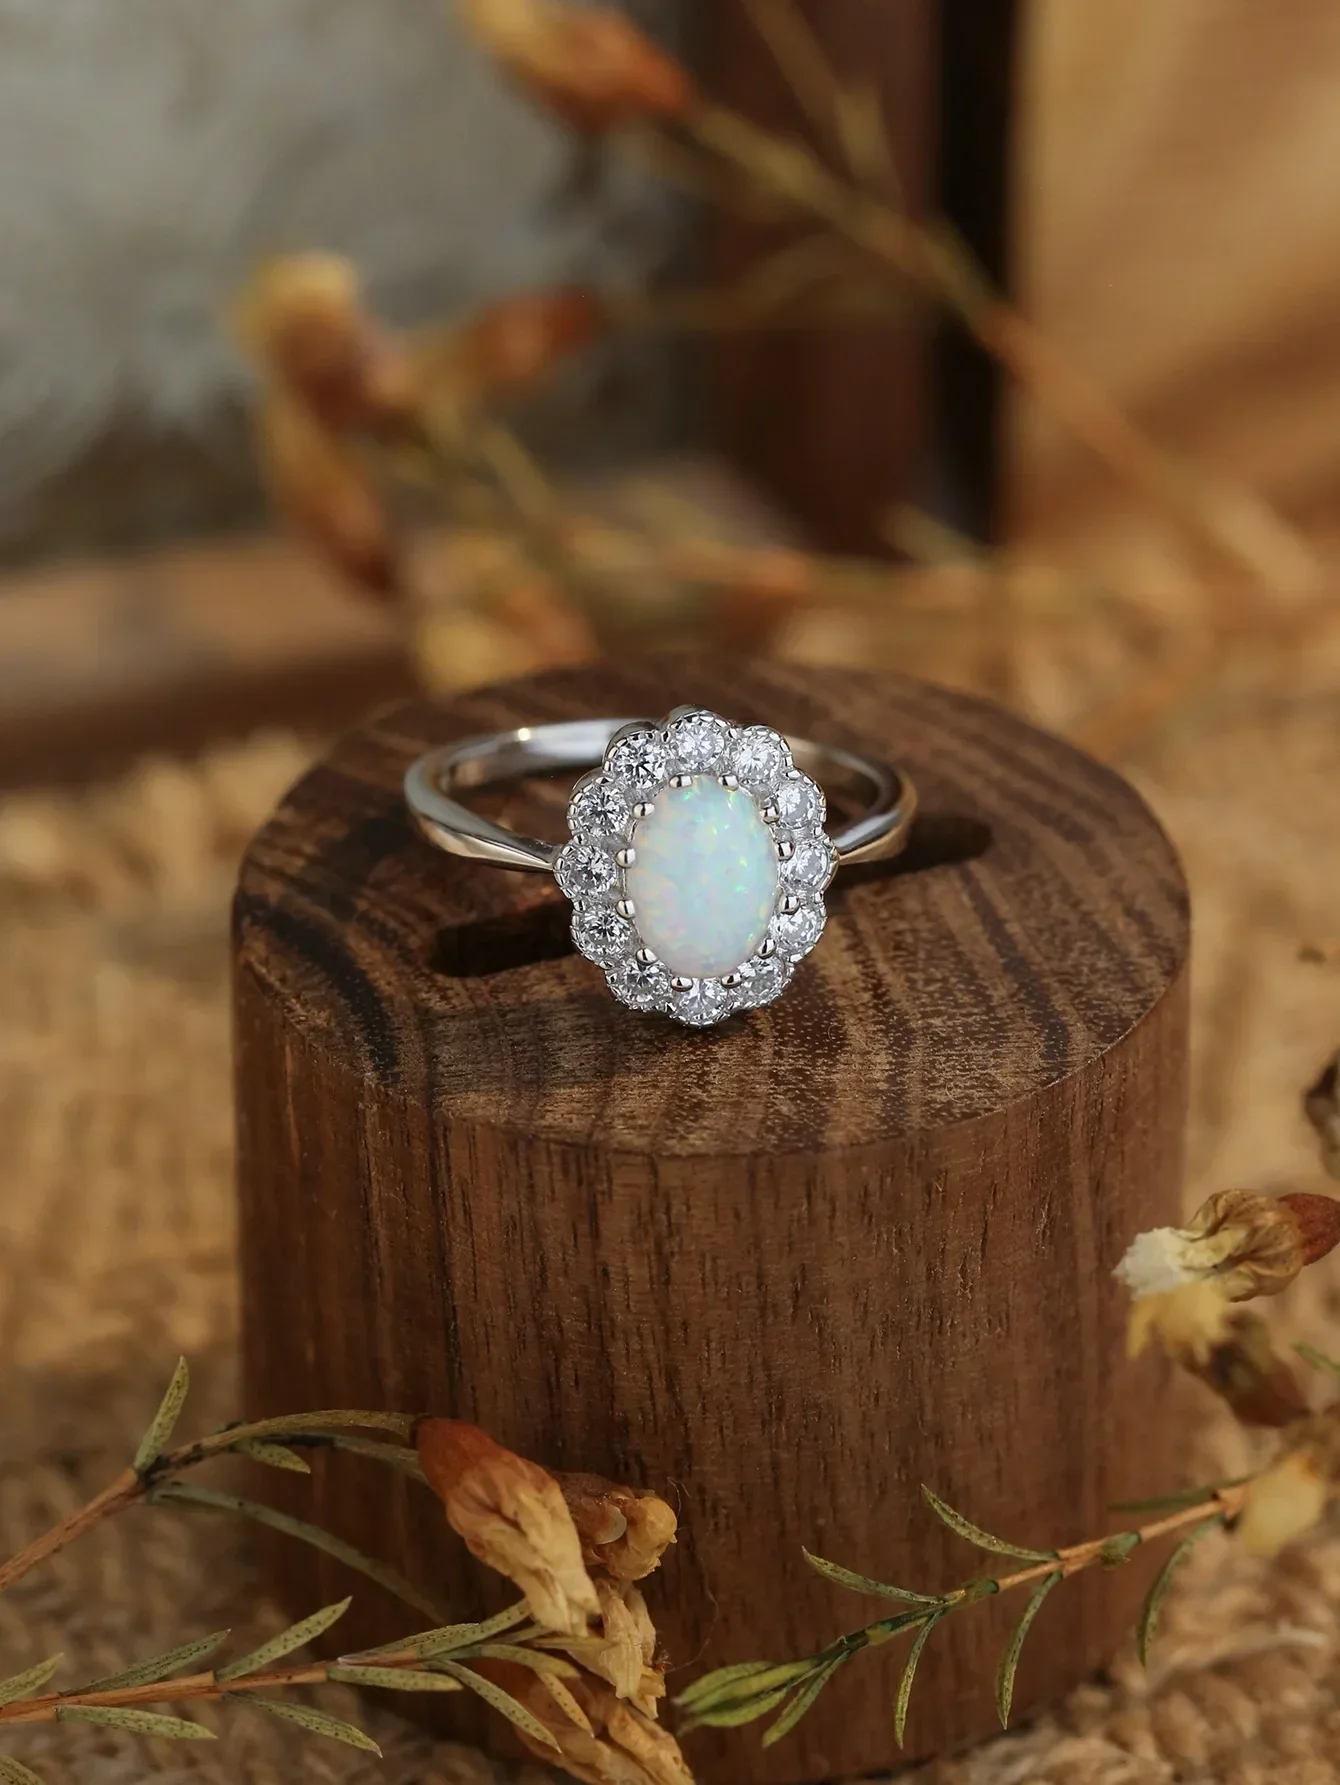 

Женское кольцо в форме цветка из серебра 925 пробы, инкрустированное цирконием и опалом, универсальное, модное и универсальное